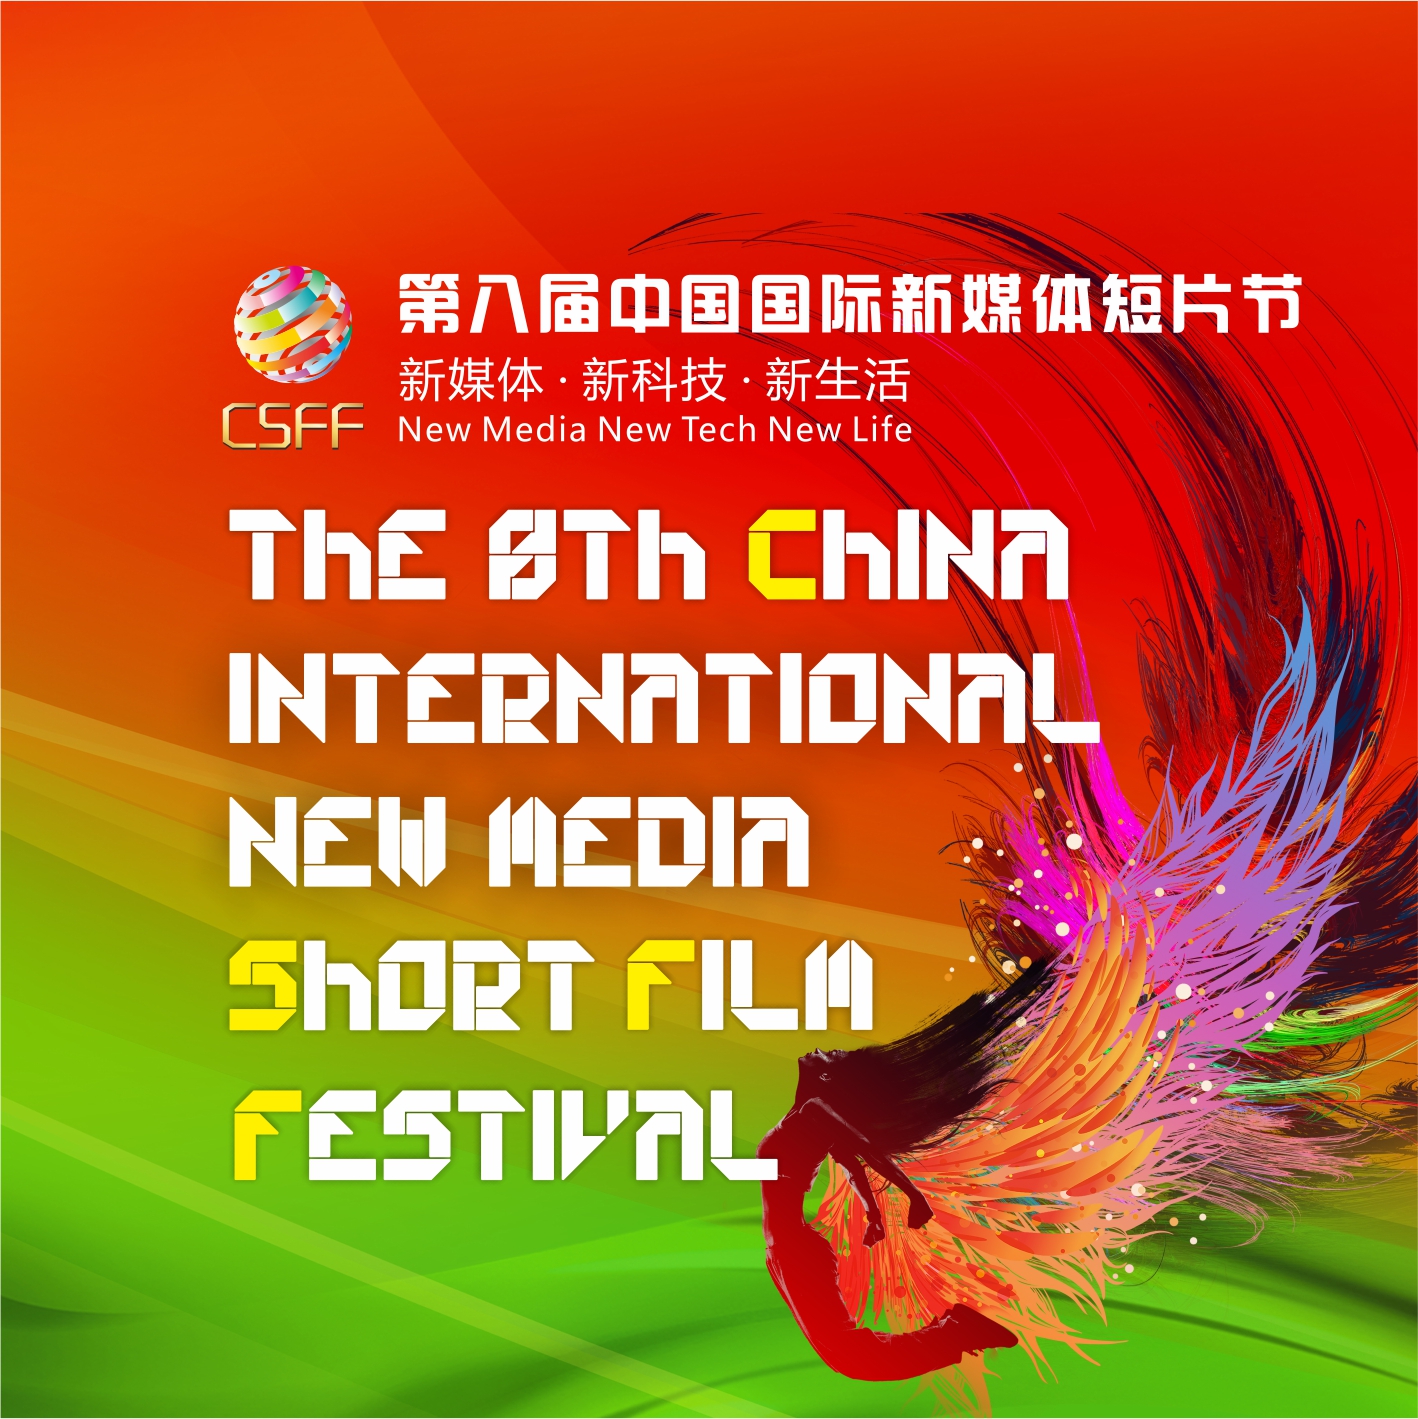 第八届深圳国际短片节开幕式